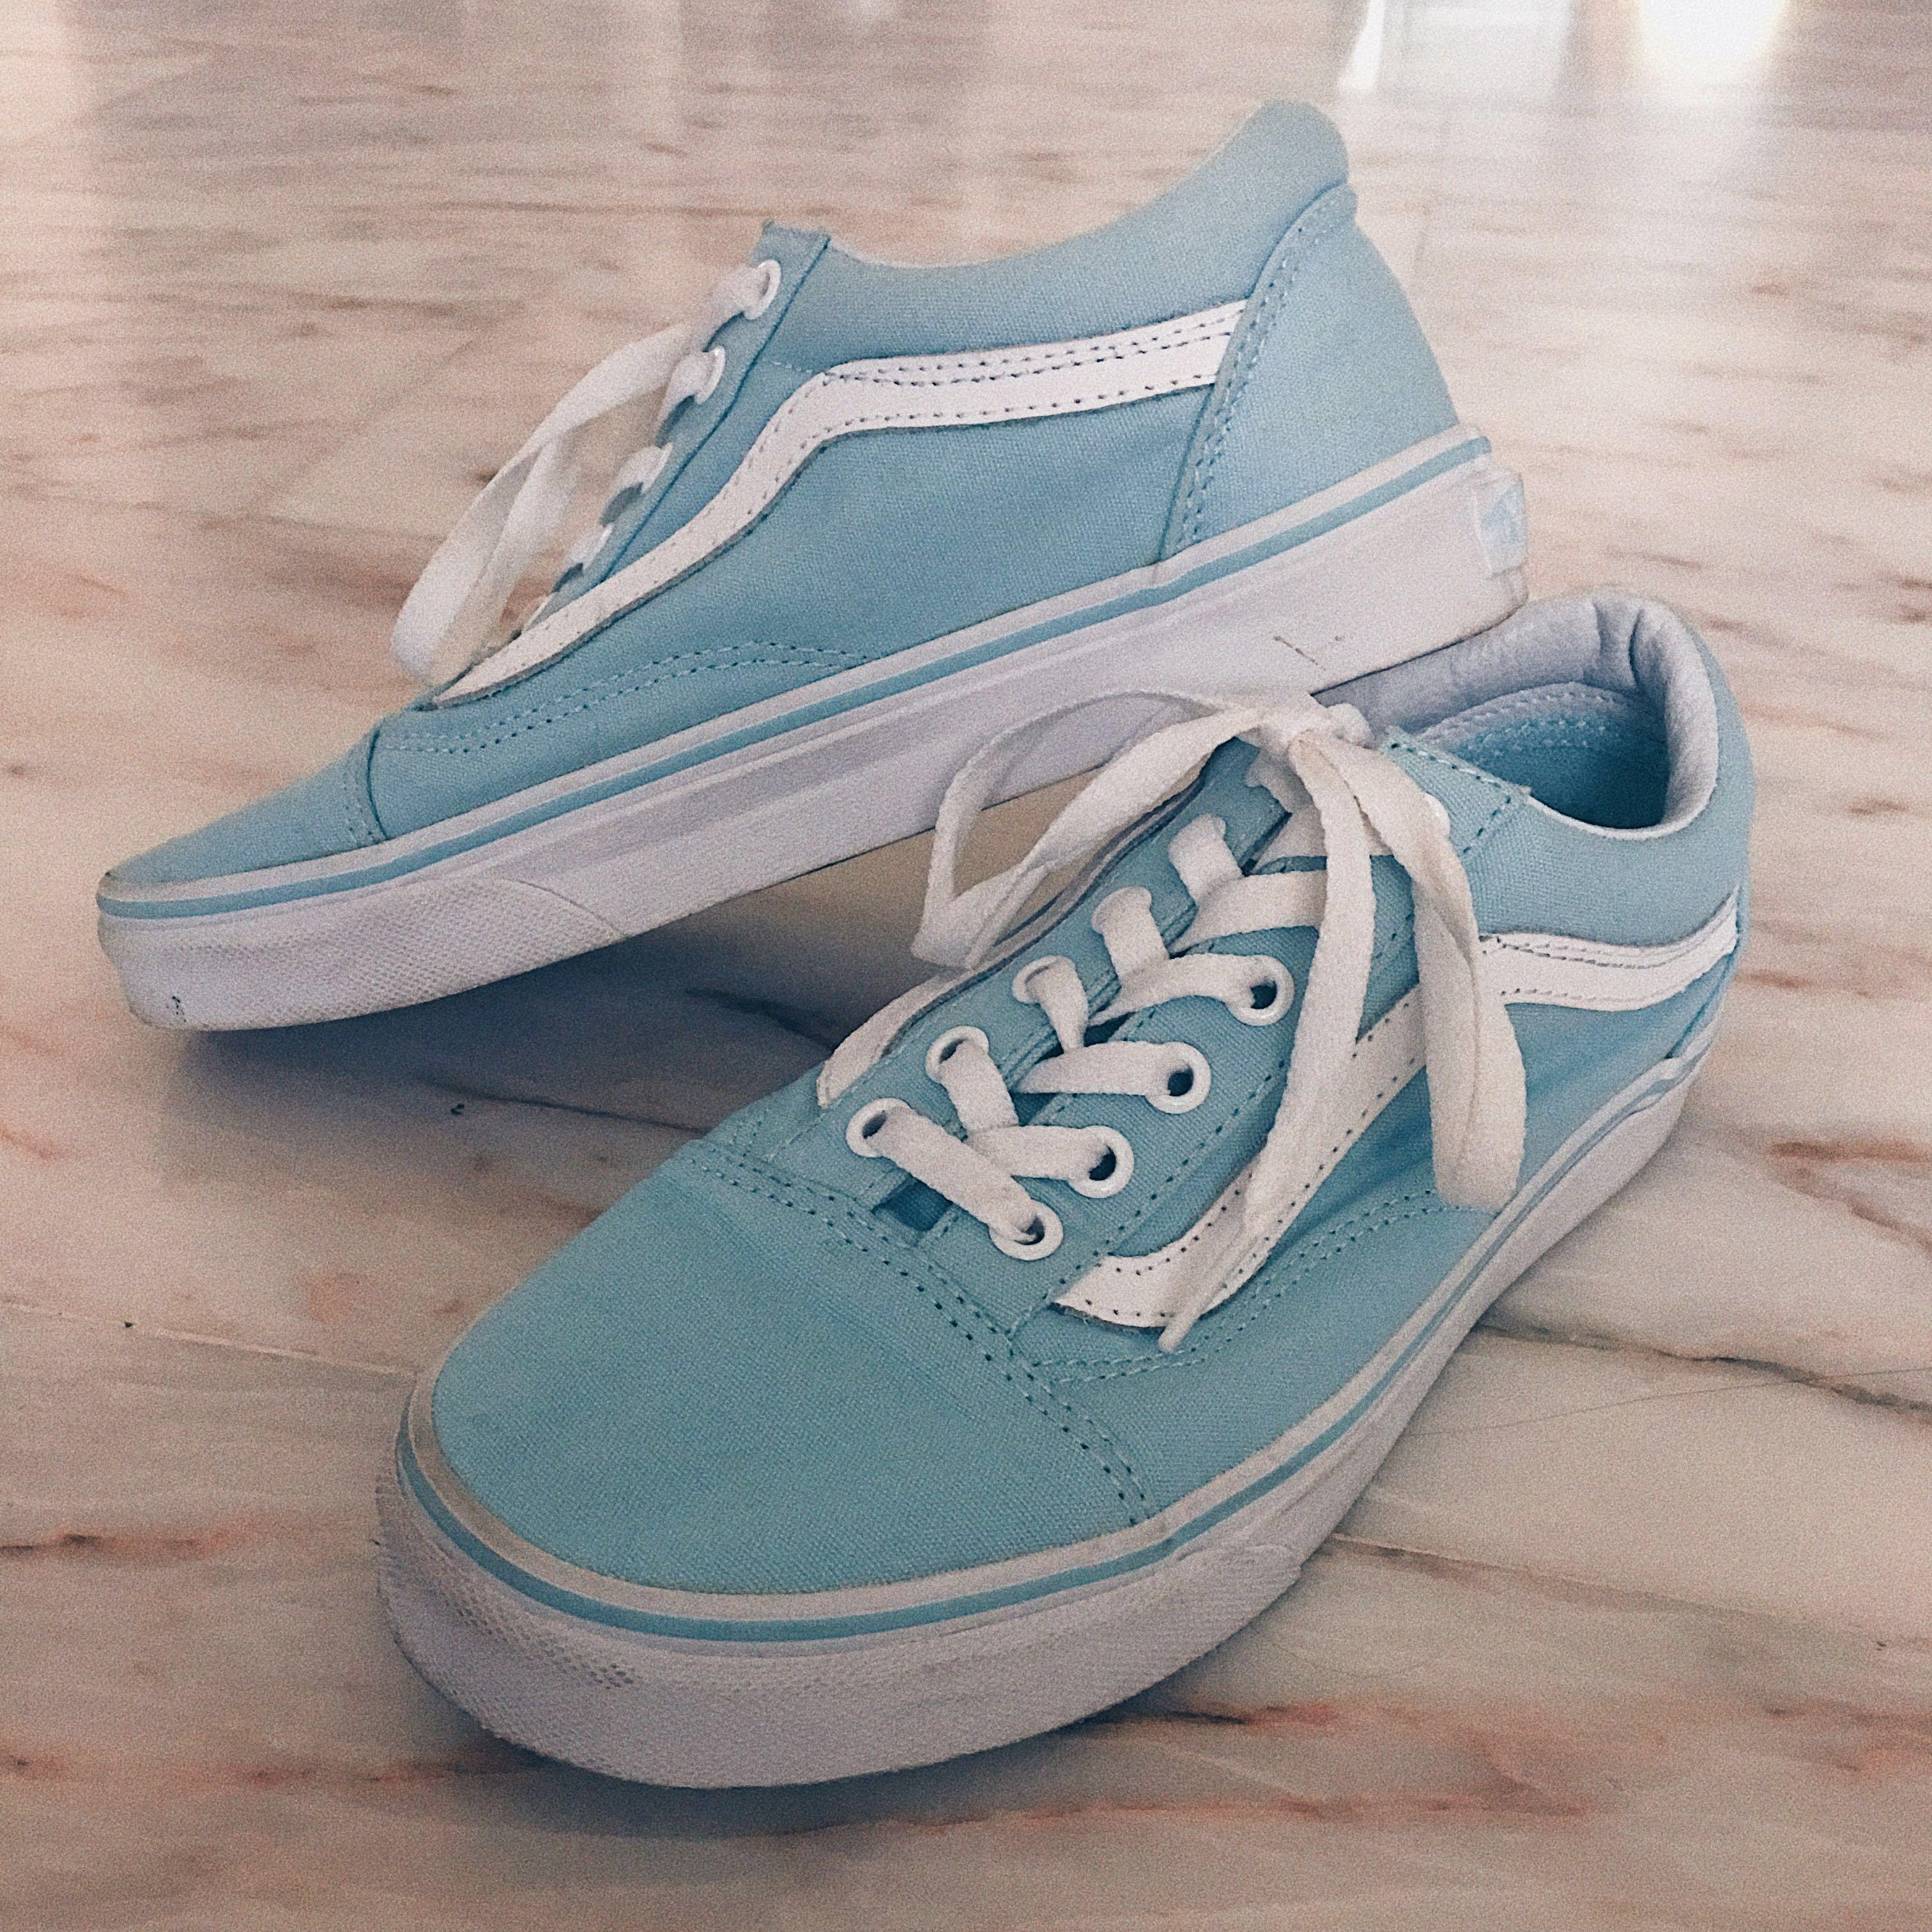 aqua blue vans shoes